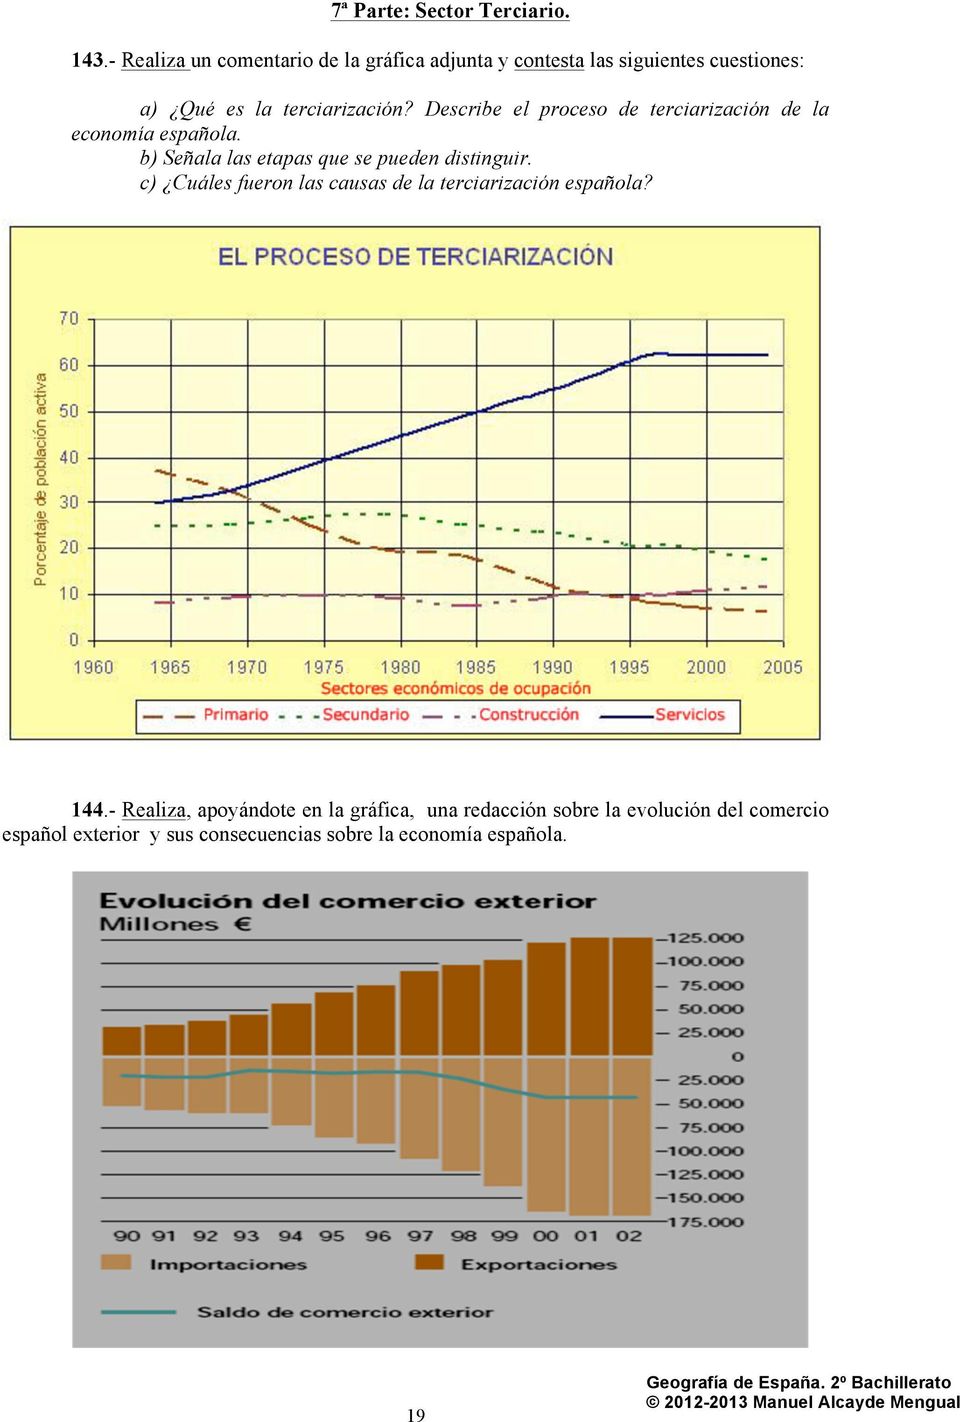 Describe el proceso de terciarización de la economía española. b) Señala las etapas que se pueden distinguir.